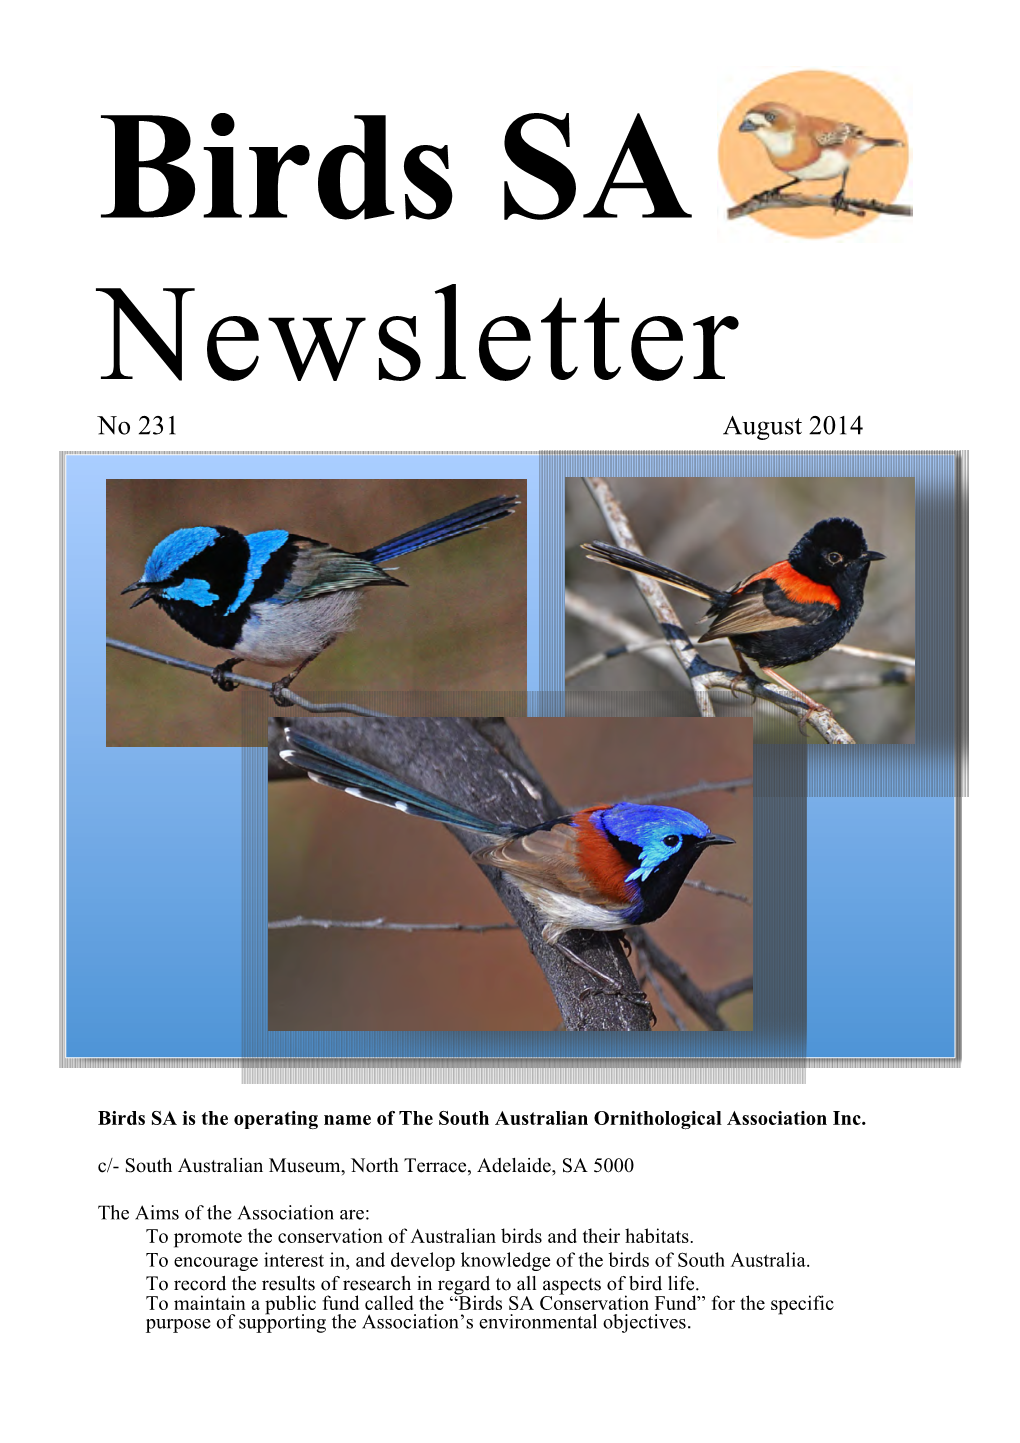 Birds SA Newsletter No. 231, August 2014